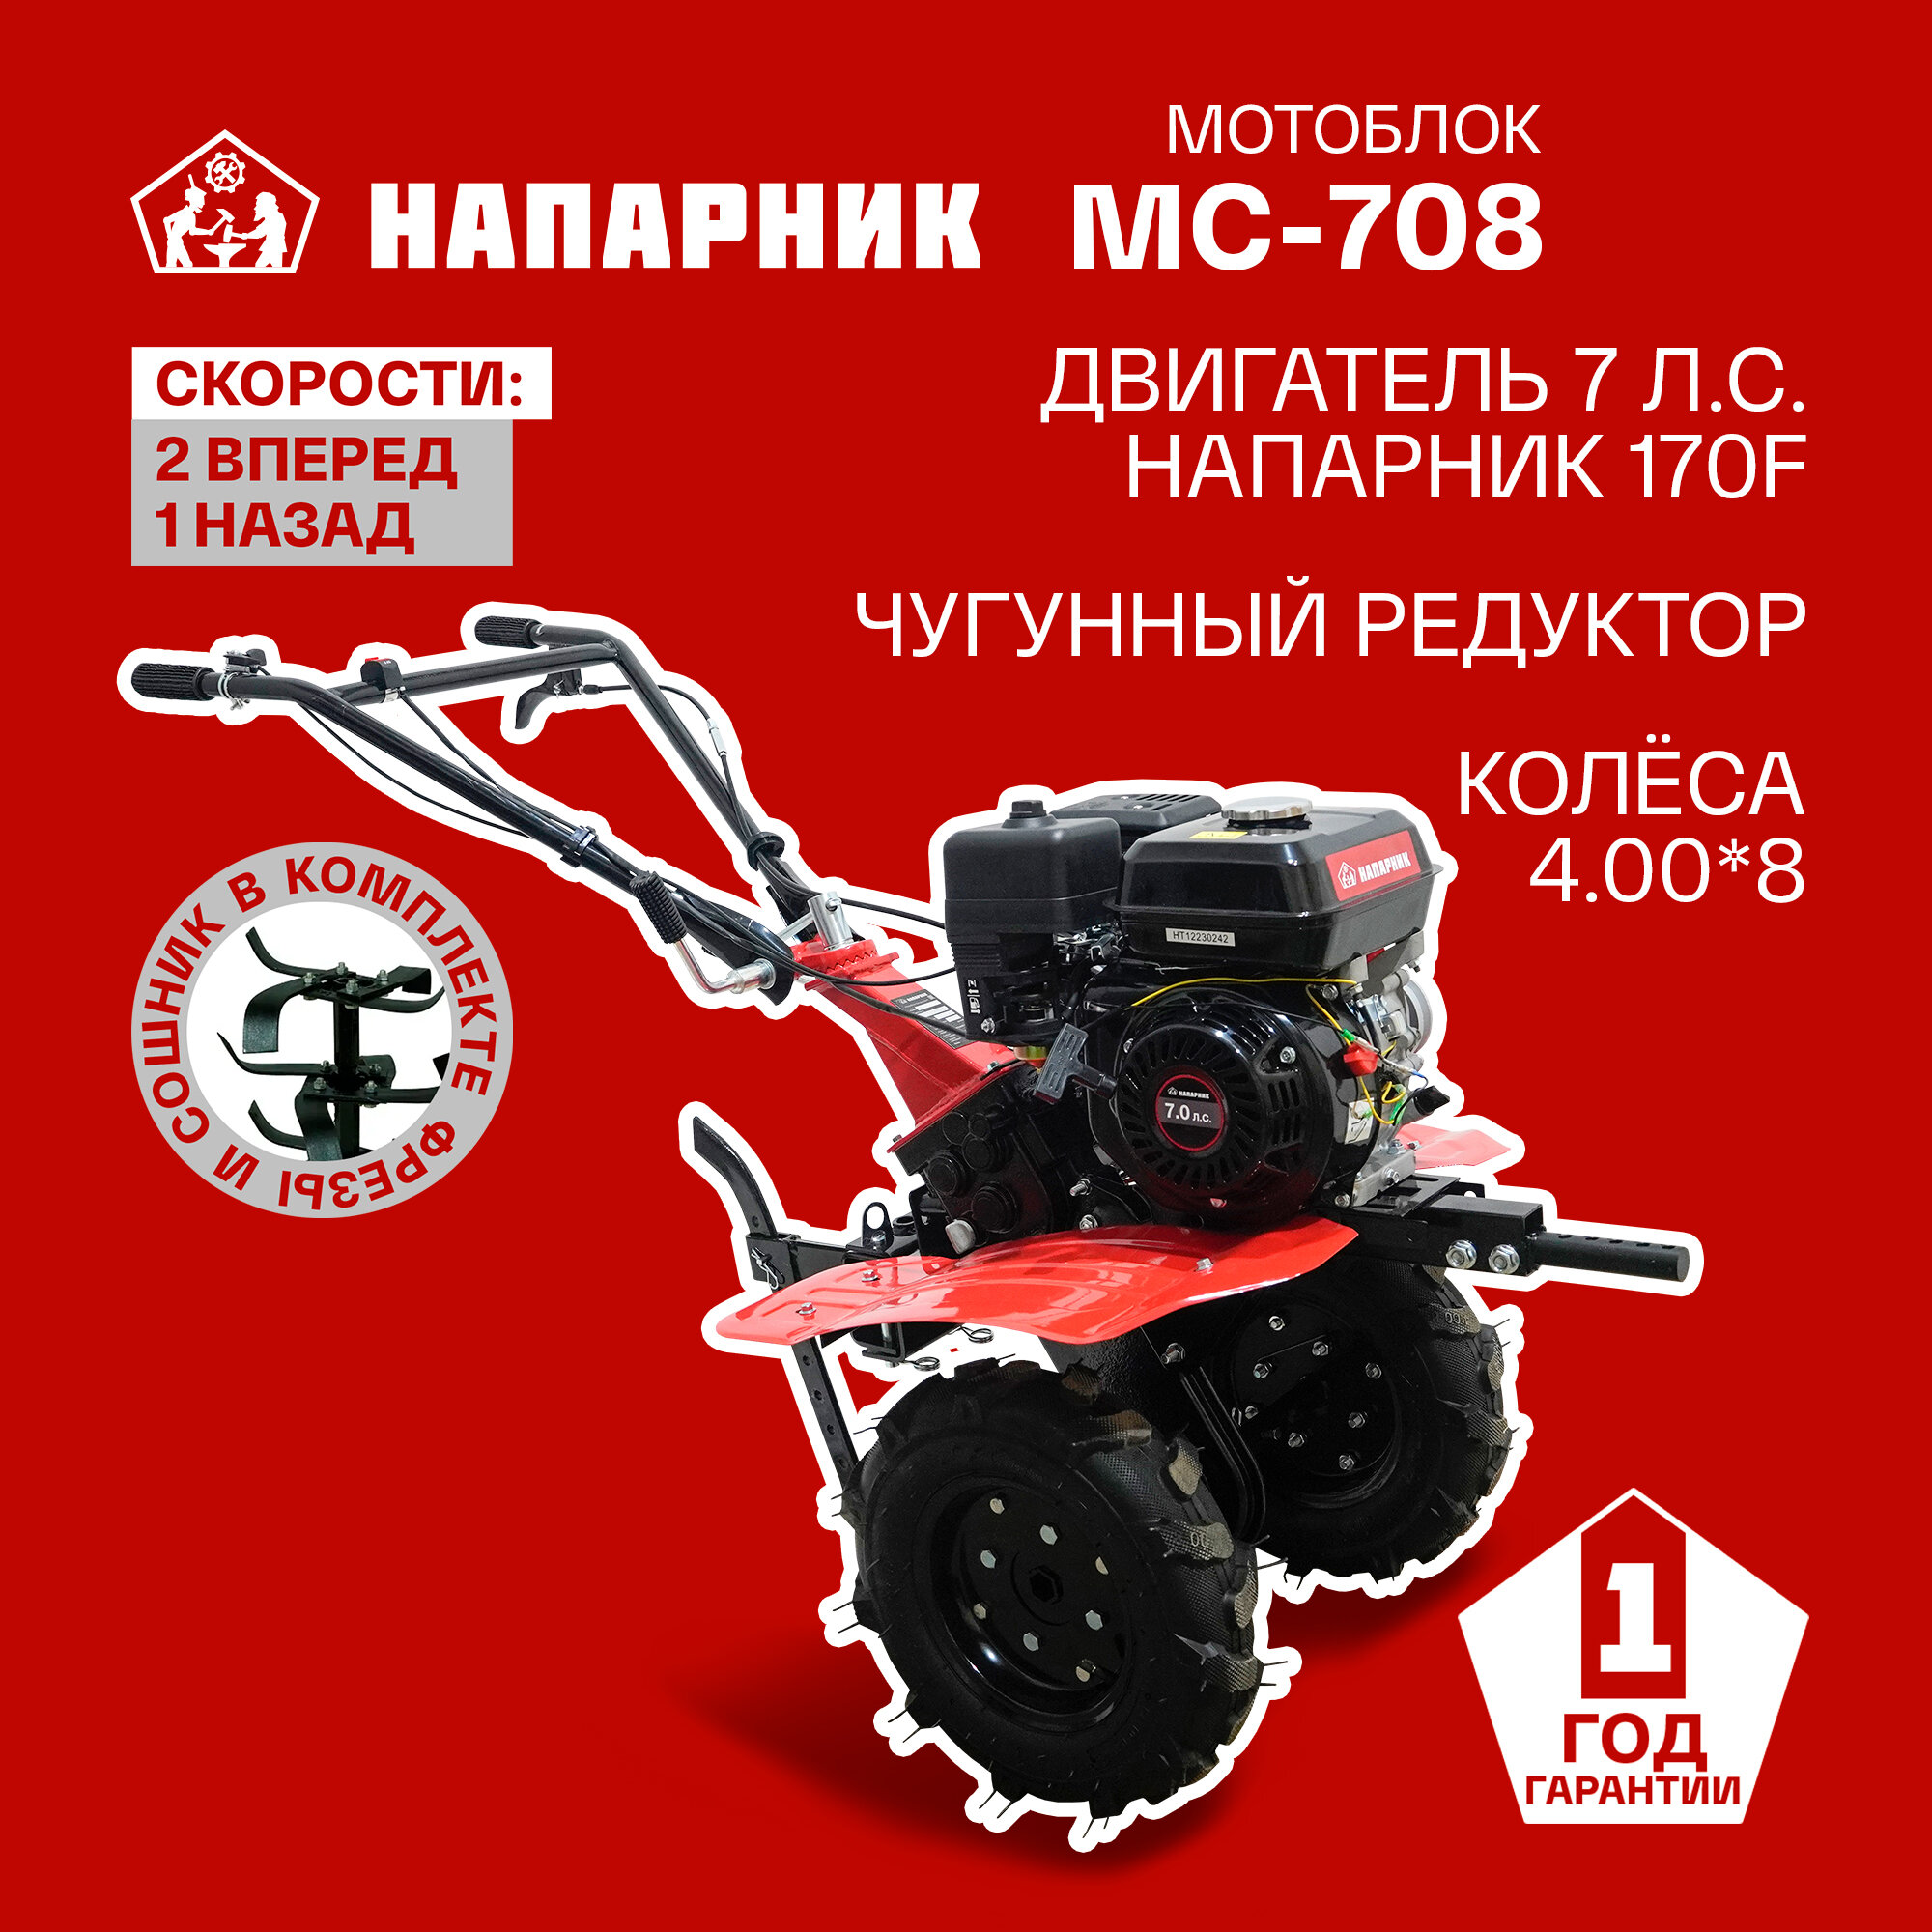 Мотоблок Напарник MC-708 Напарник 170F колеса 4.00*8 7л. с. 2 вперед 1 назад